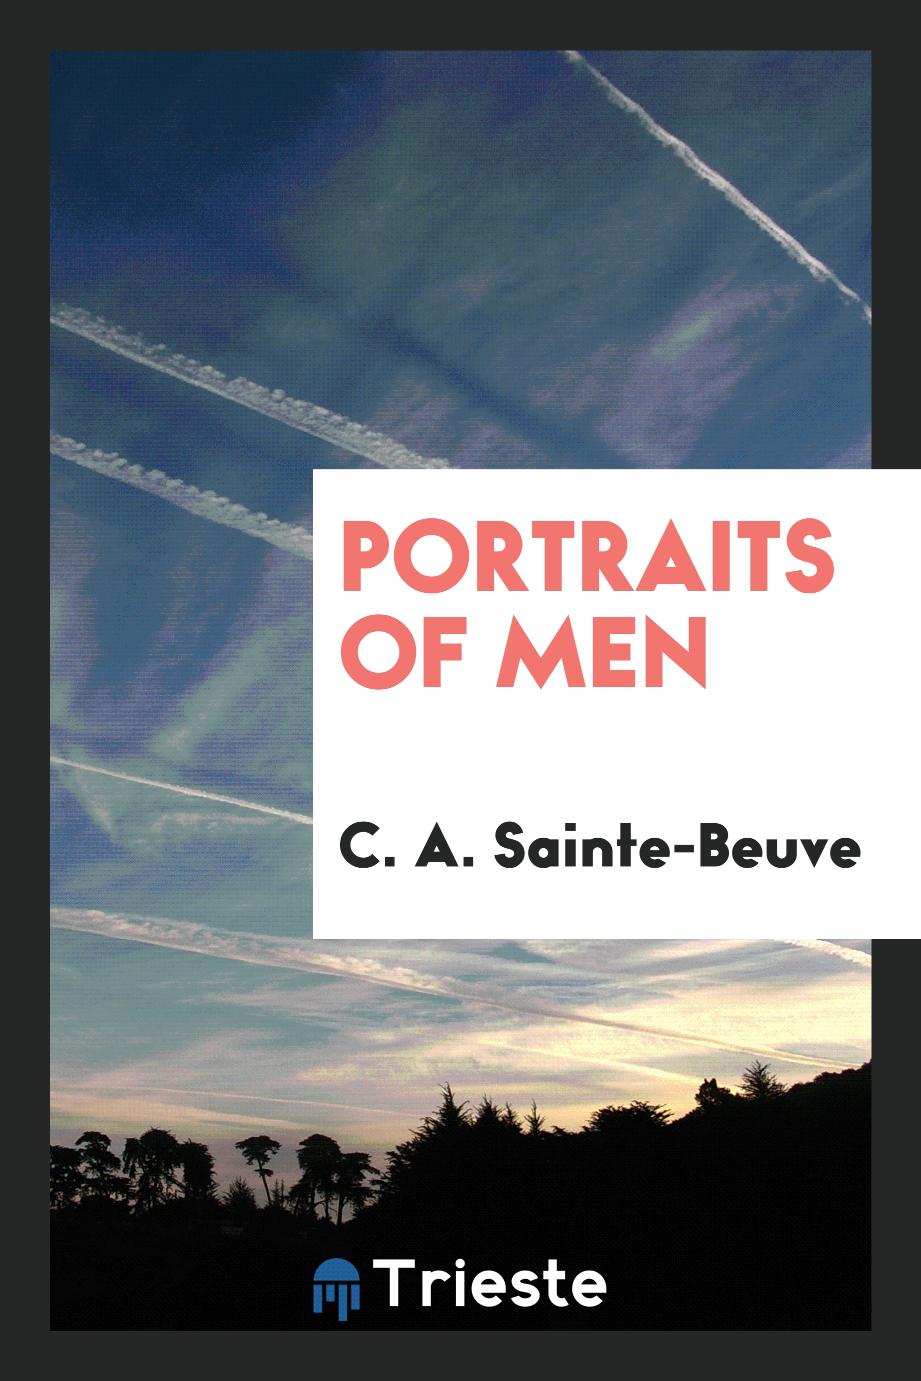 Portraits of men